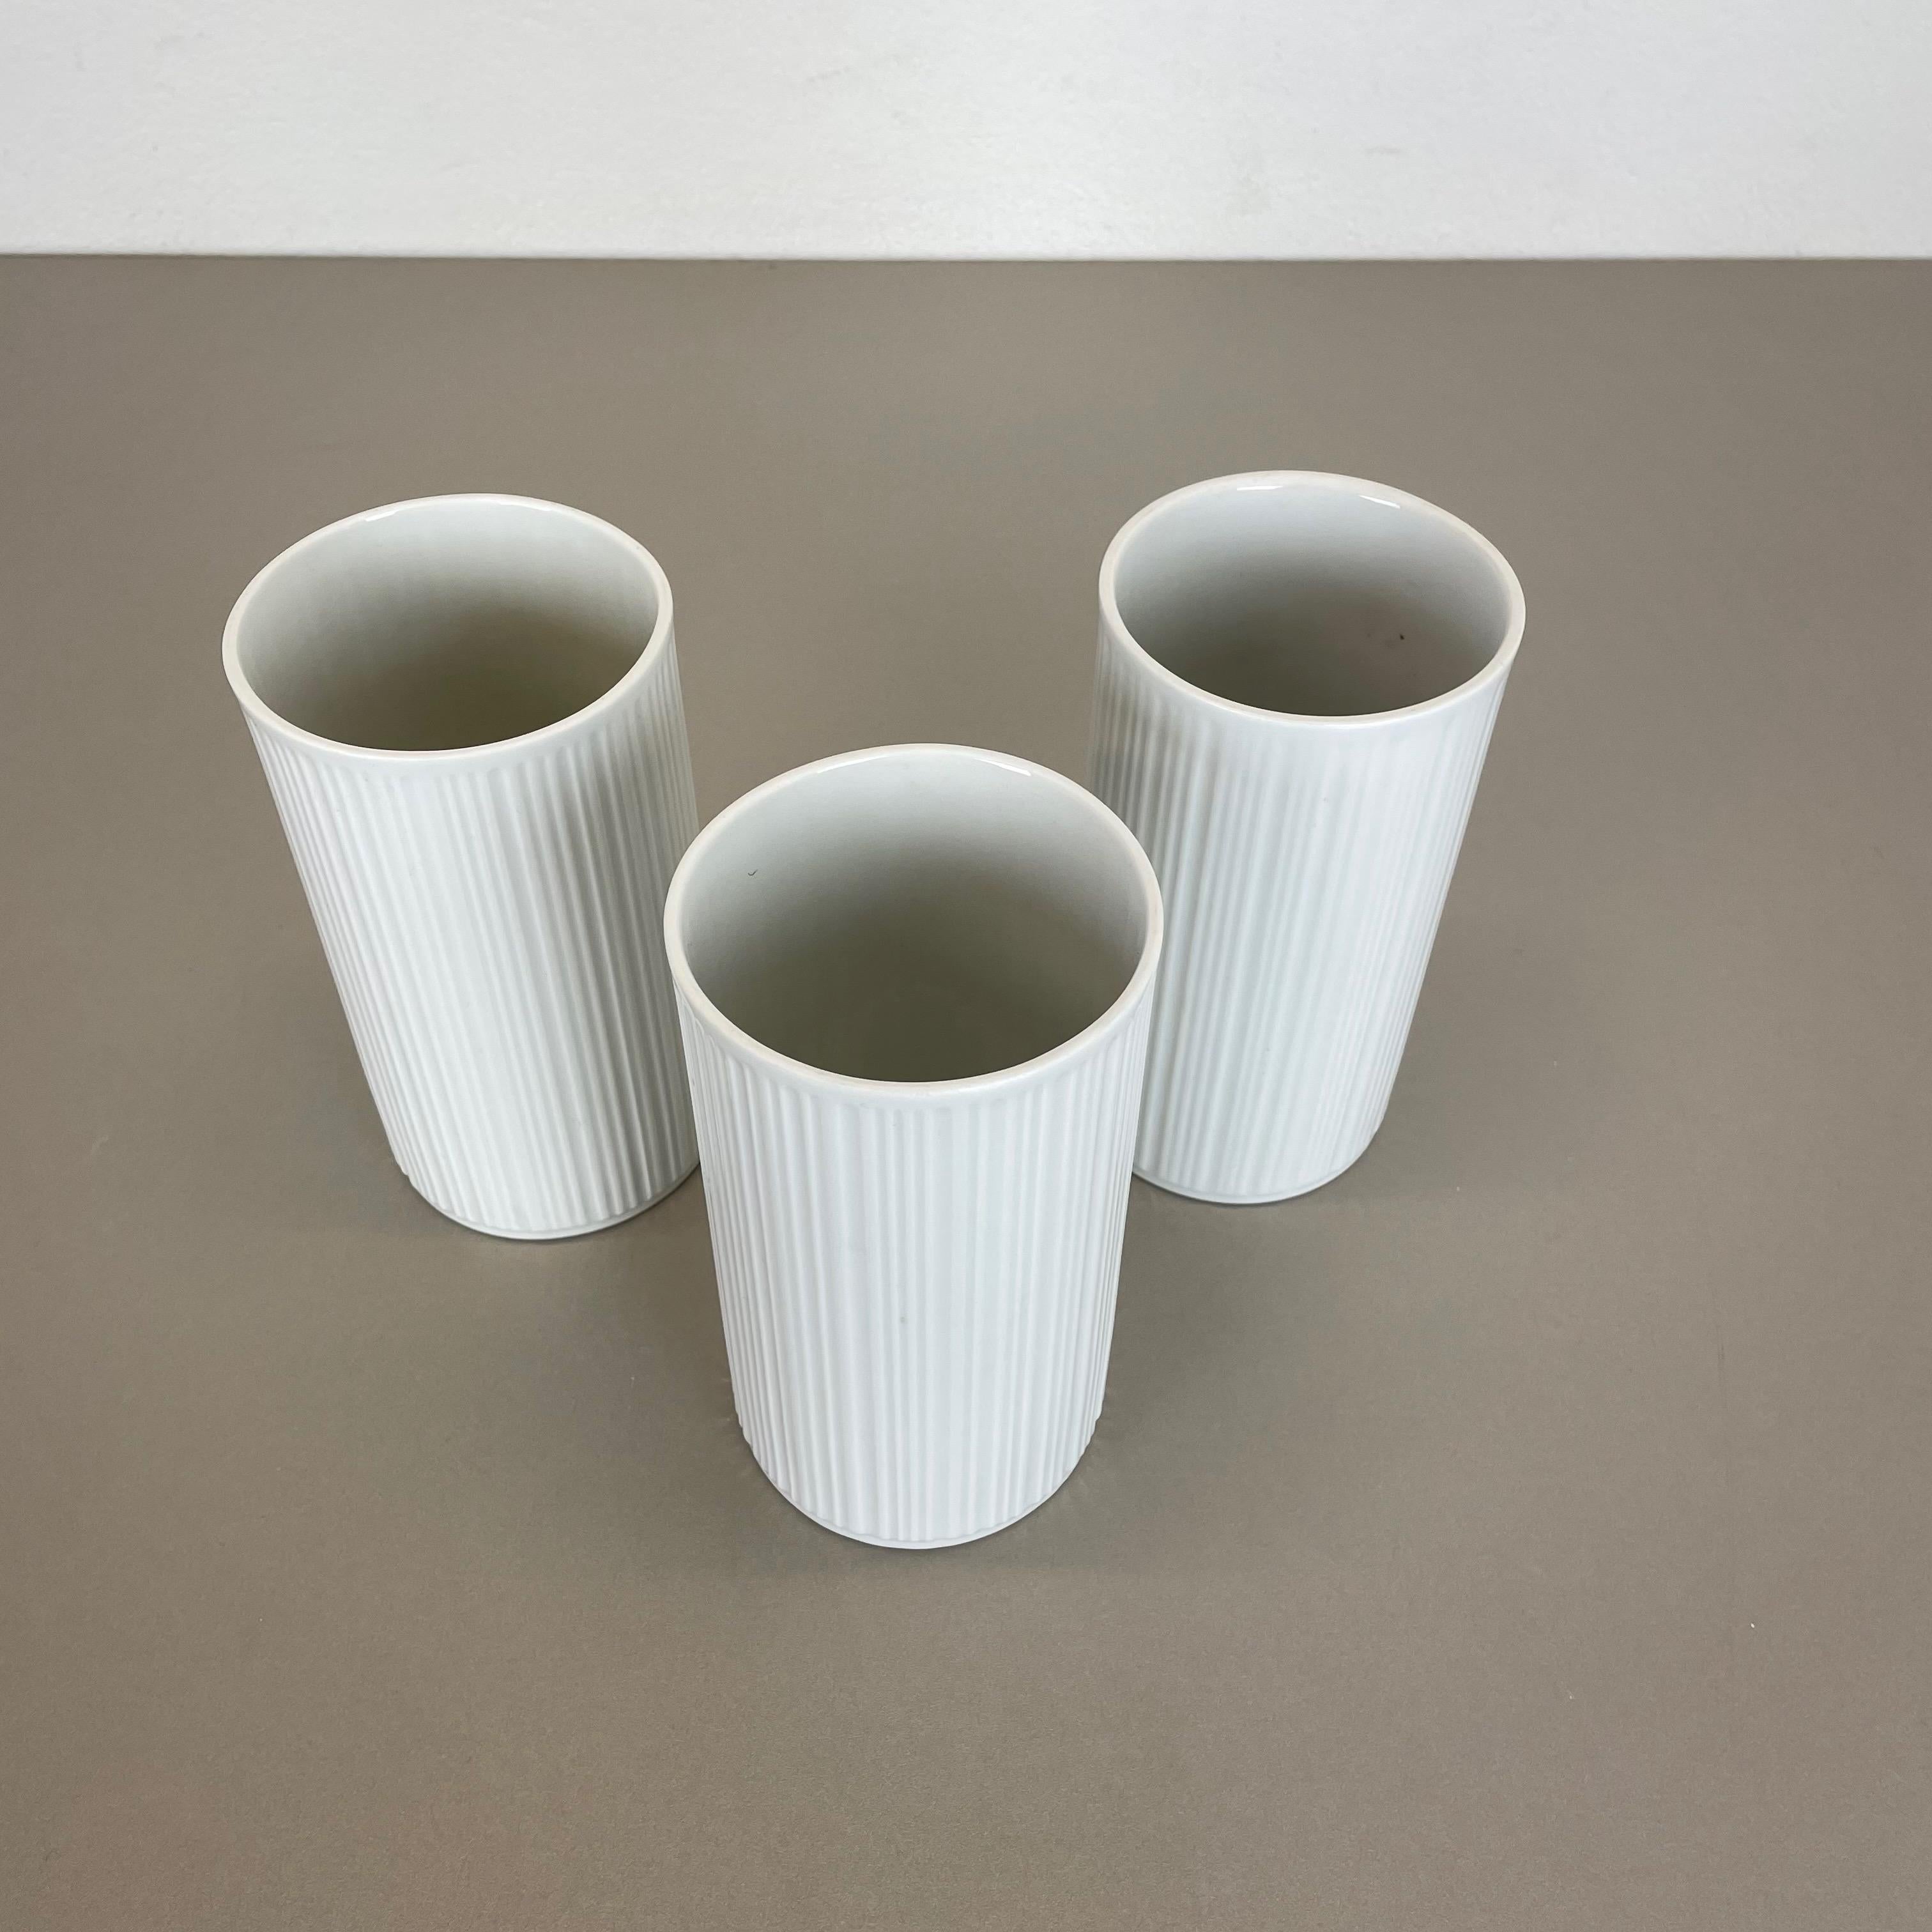 Set of 3 OP Art Porcelain Vases by Melitta Minden, Germany, 1970s For Sale 4